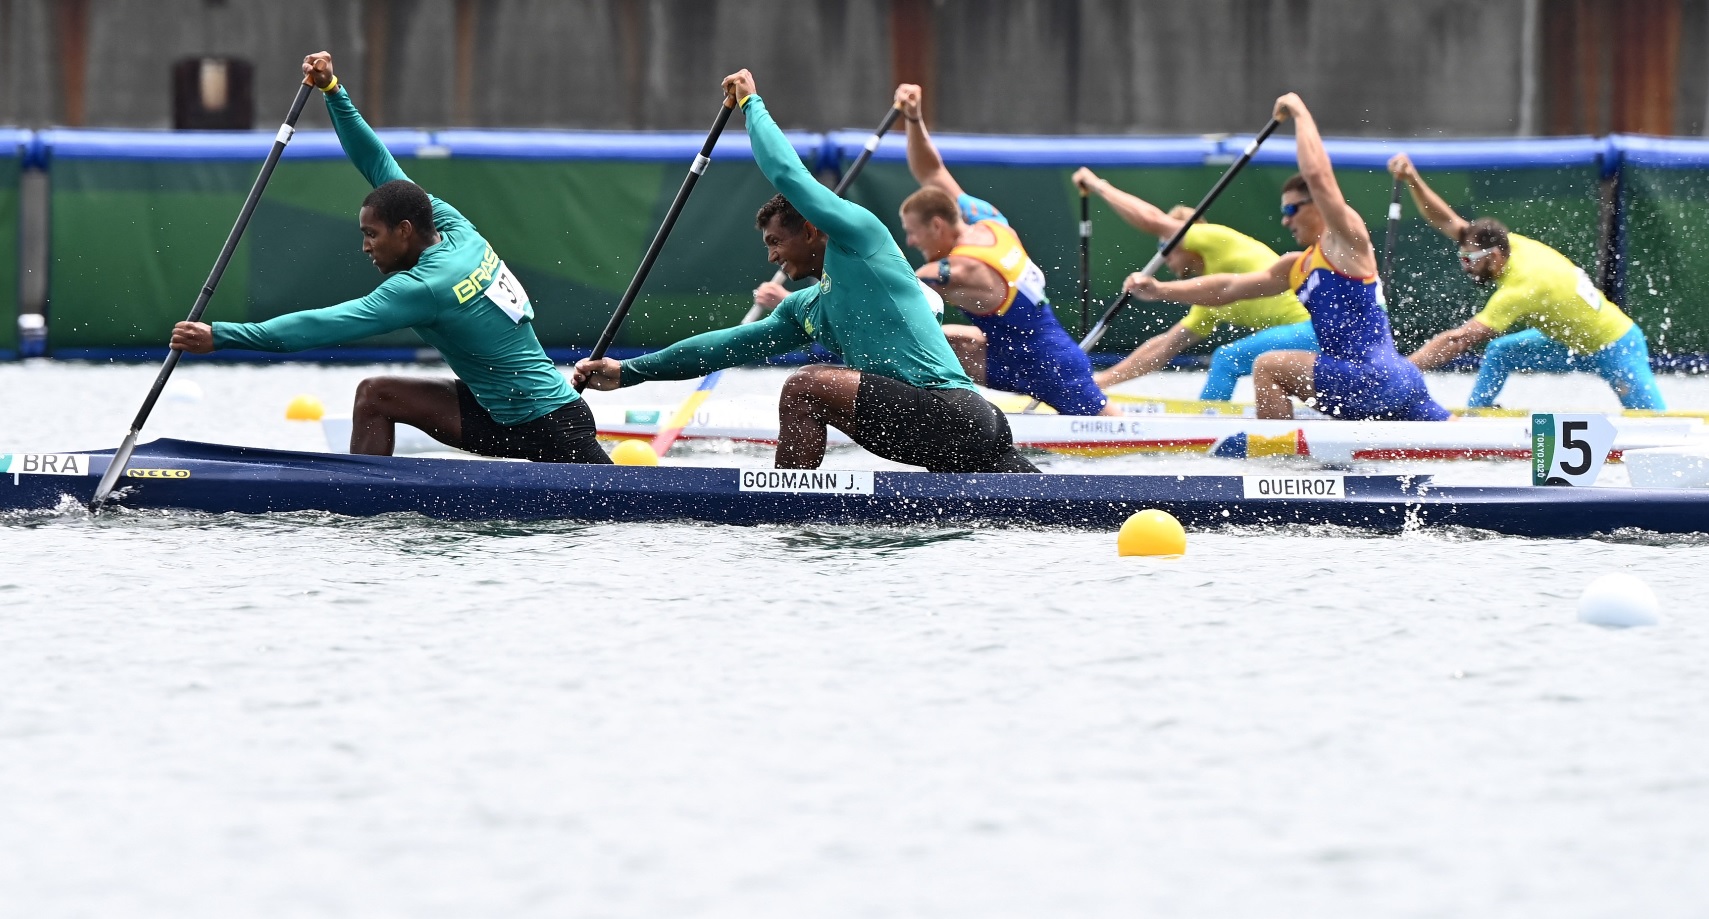 Echipajul de canoe dublu s-a calificat în semifinale